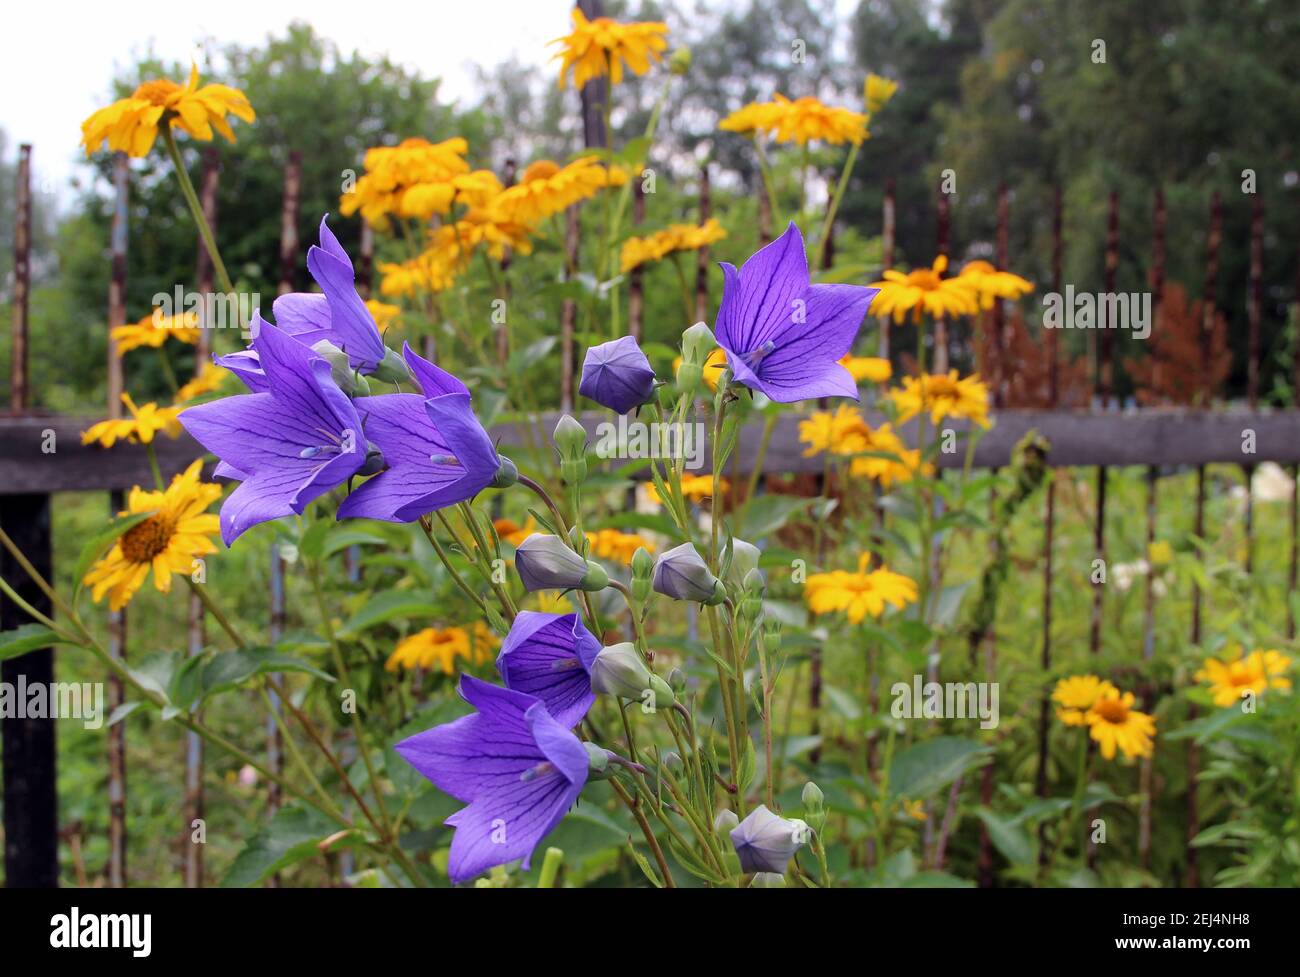 Des fleurs bleues étonnantes avec des bourgeons ouverts et fermés avec des fleurs jaunes, et derrière une clôture rouillée. Banque D'Images